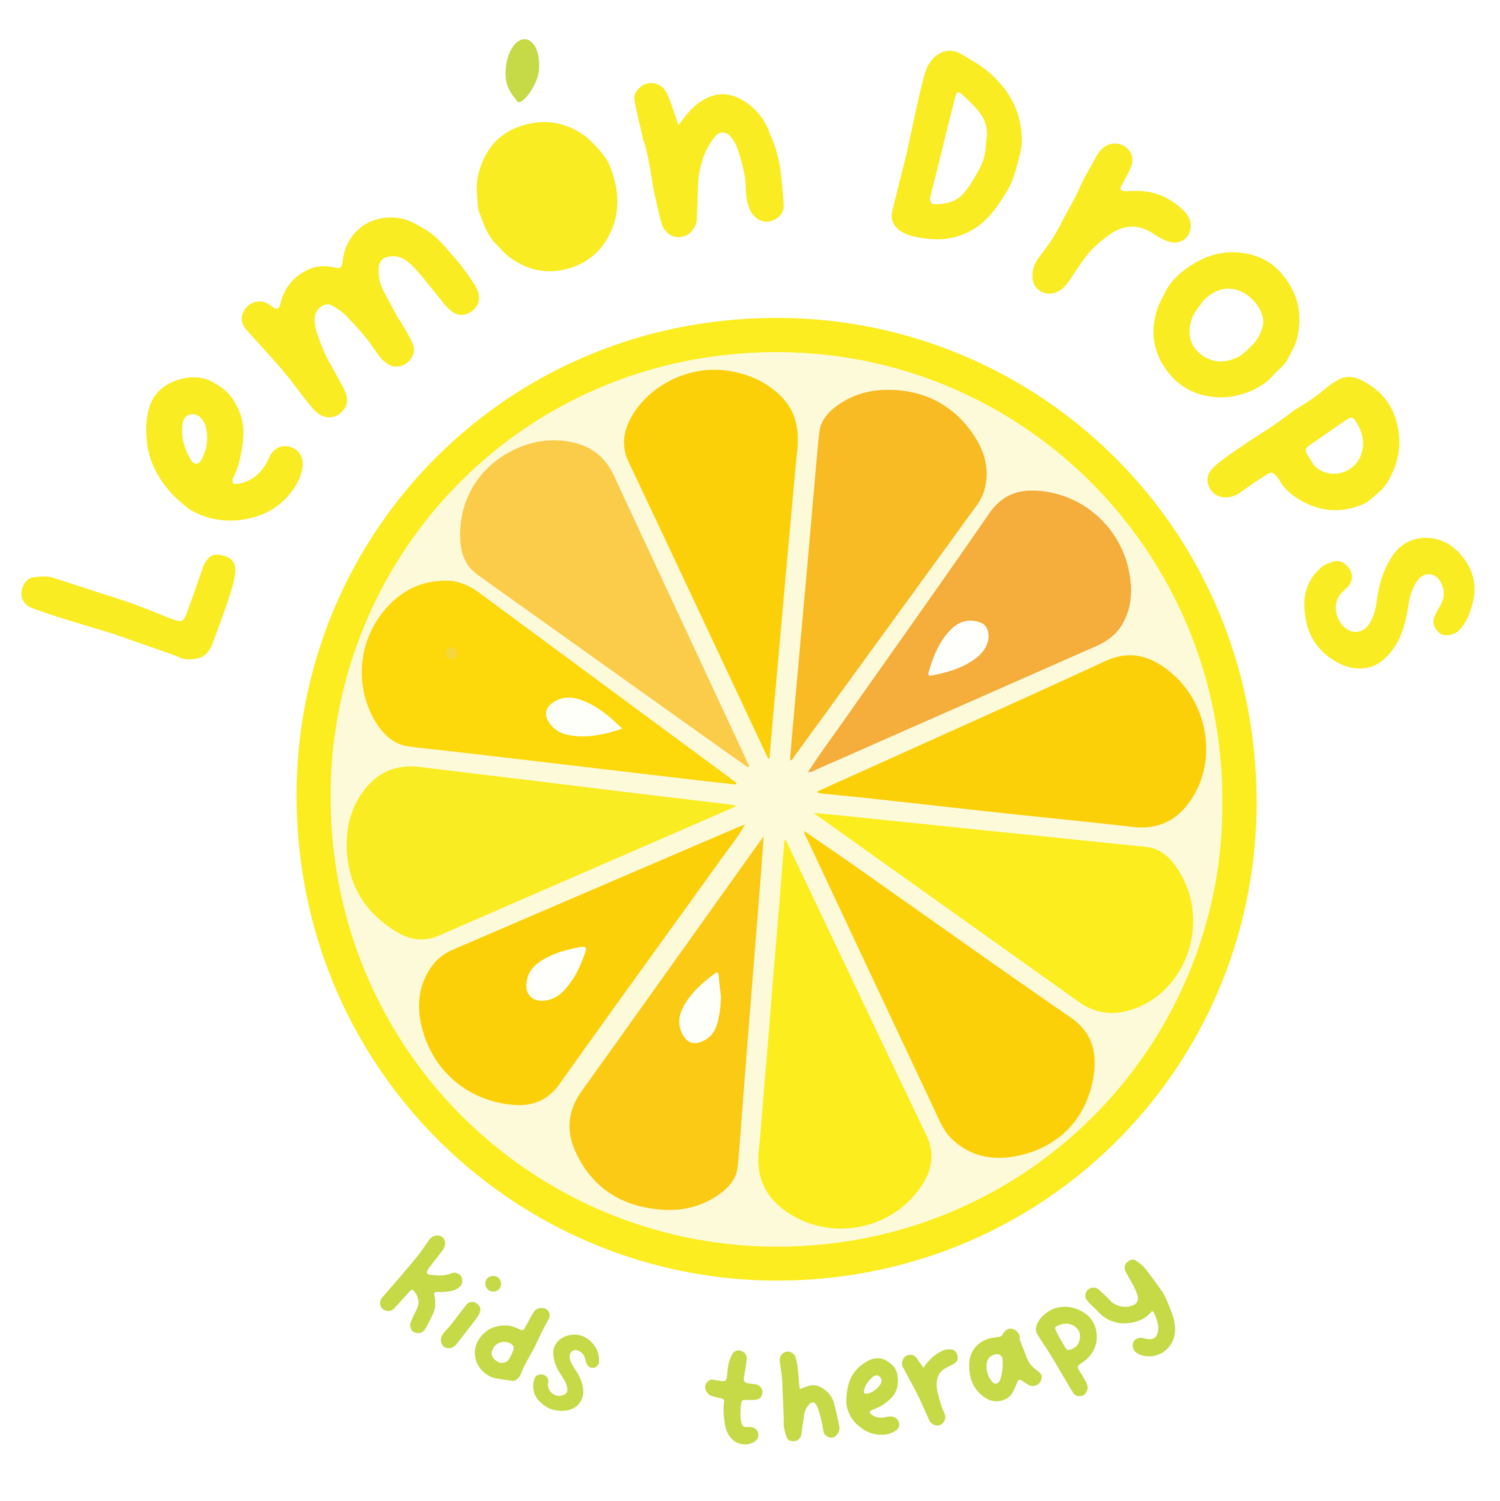 Lemon+Drops+Kids+Therapy-01-01.png